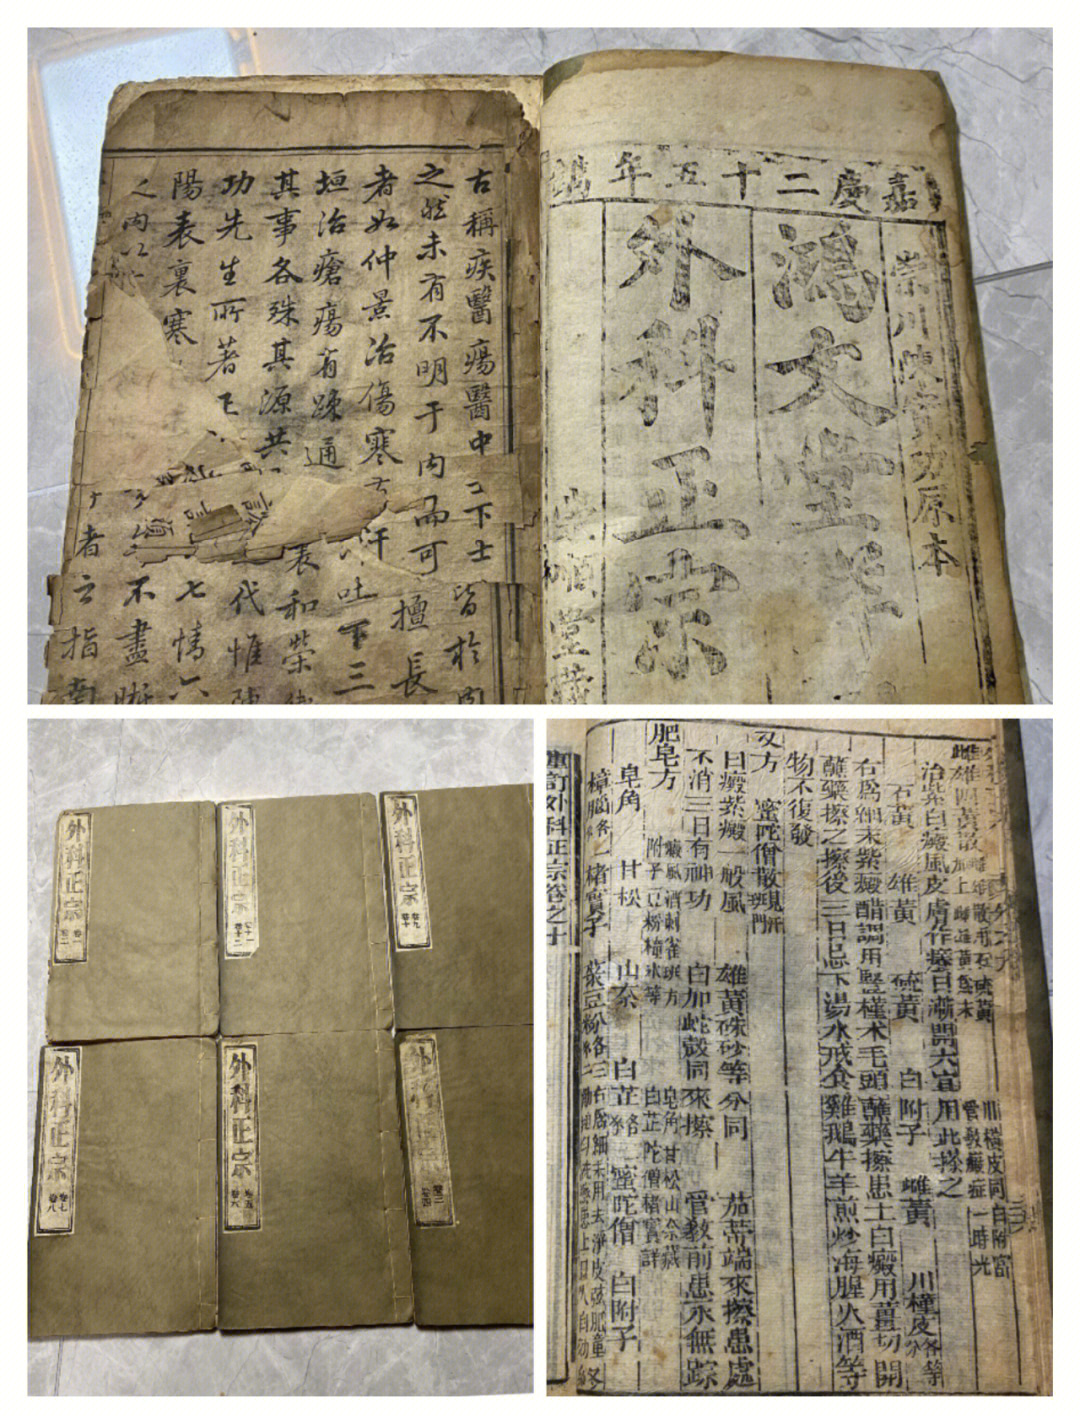 安徽中医药大学图书馆不断推进中医古籍传承和保护